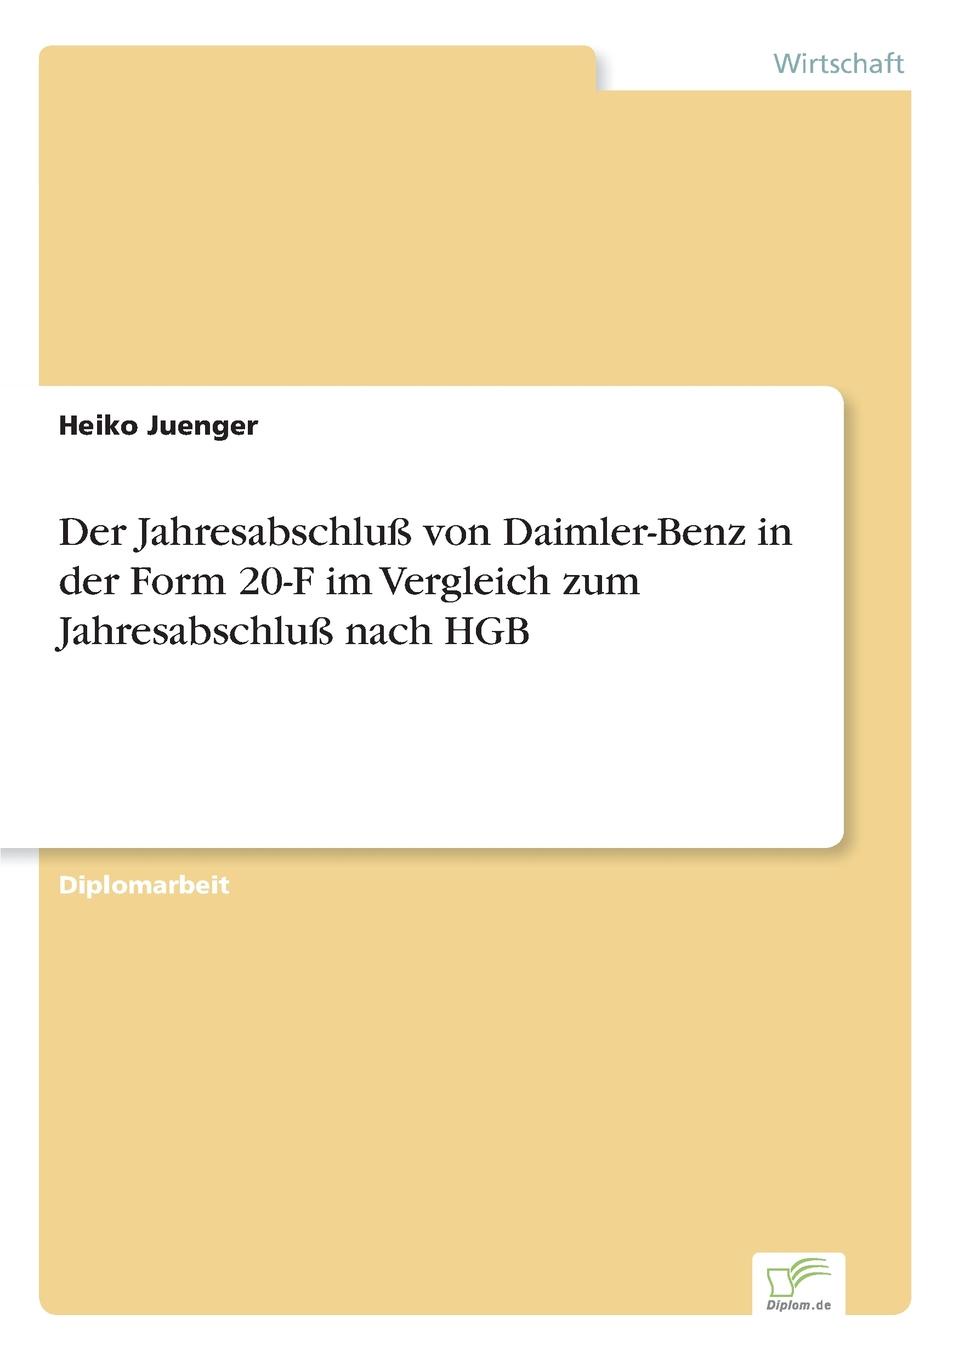 Der Jahresabschluss von Daimler-Benz in der Form 20-F im Vergleich zum Jahresabschluss nach HGB